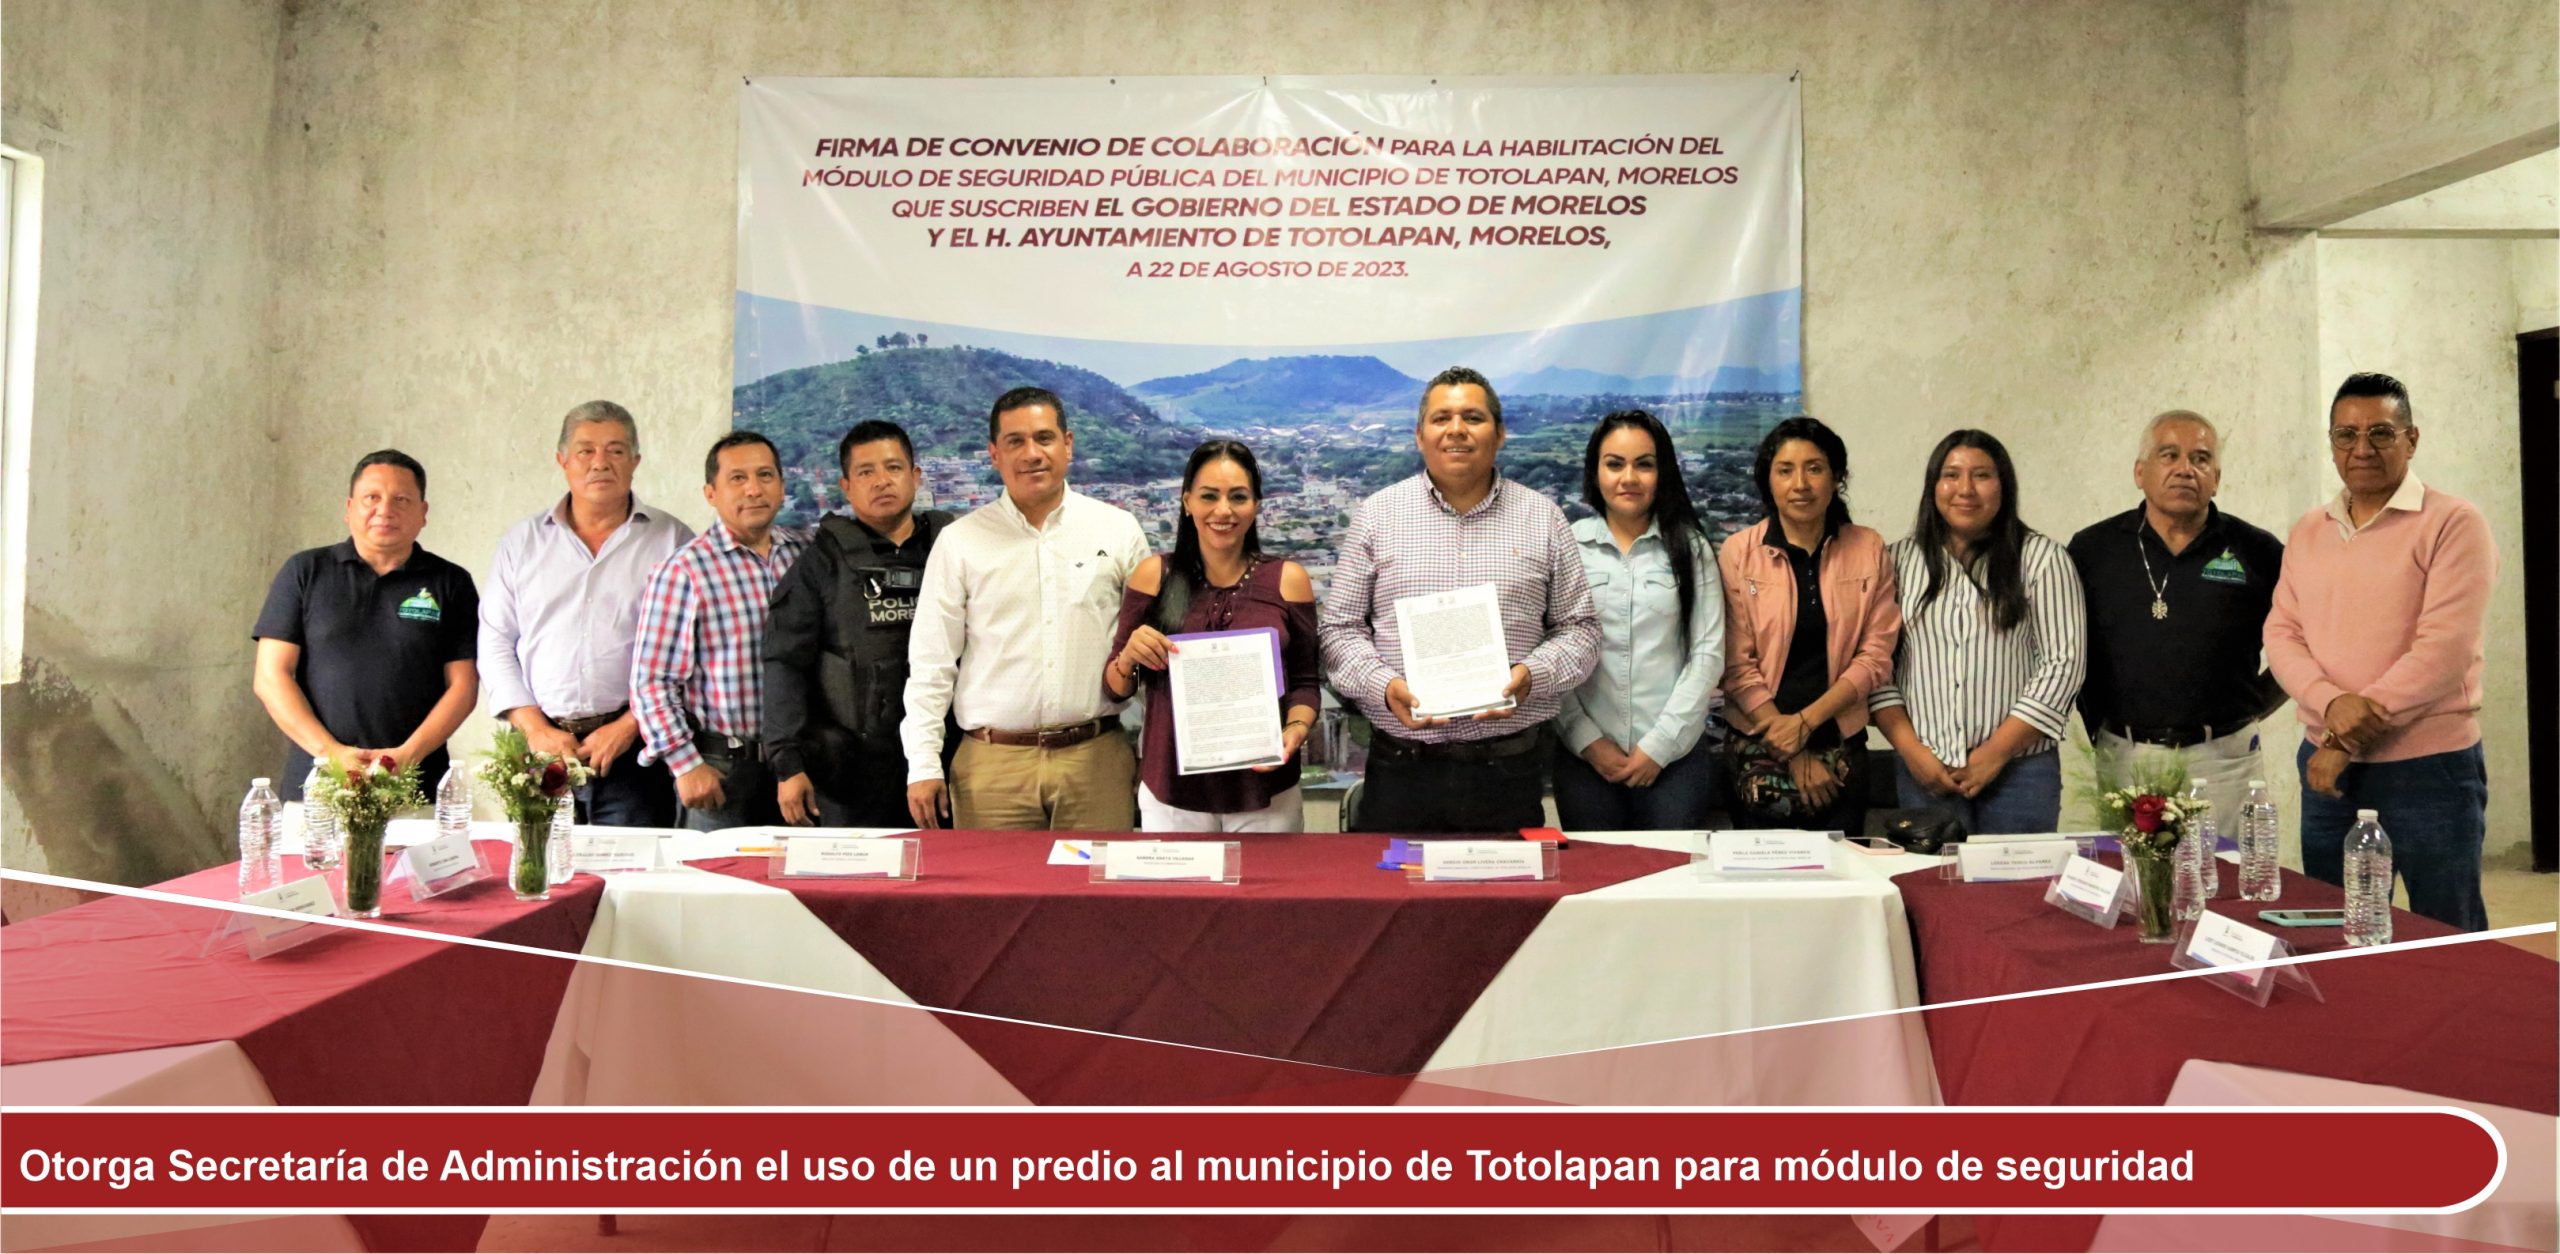 Otorga Secretaría de Administración el uso de un predio al municipio de Totolapan para módulo de seguridad